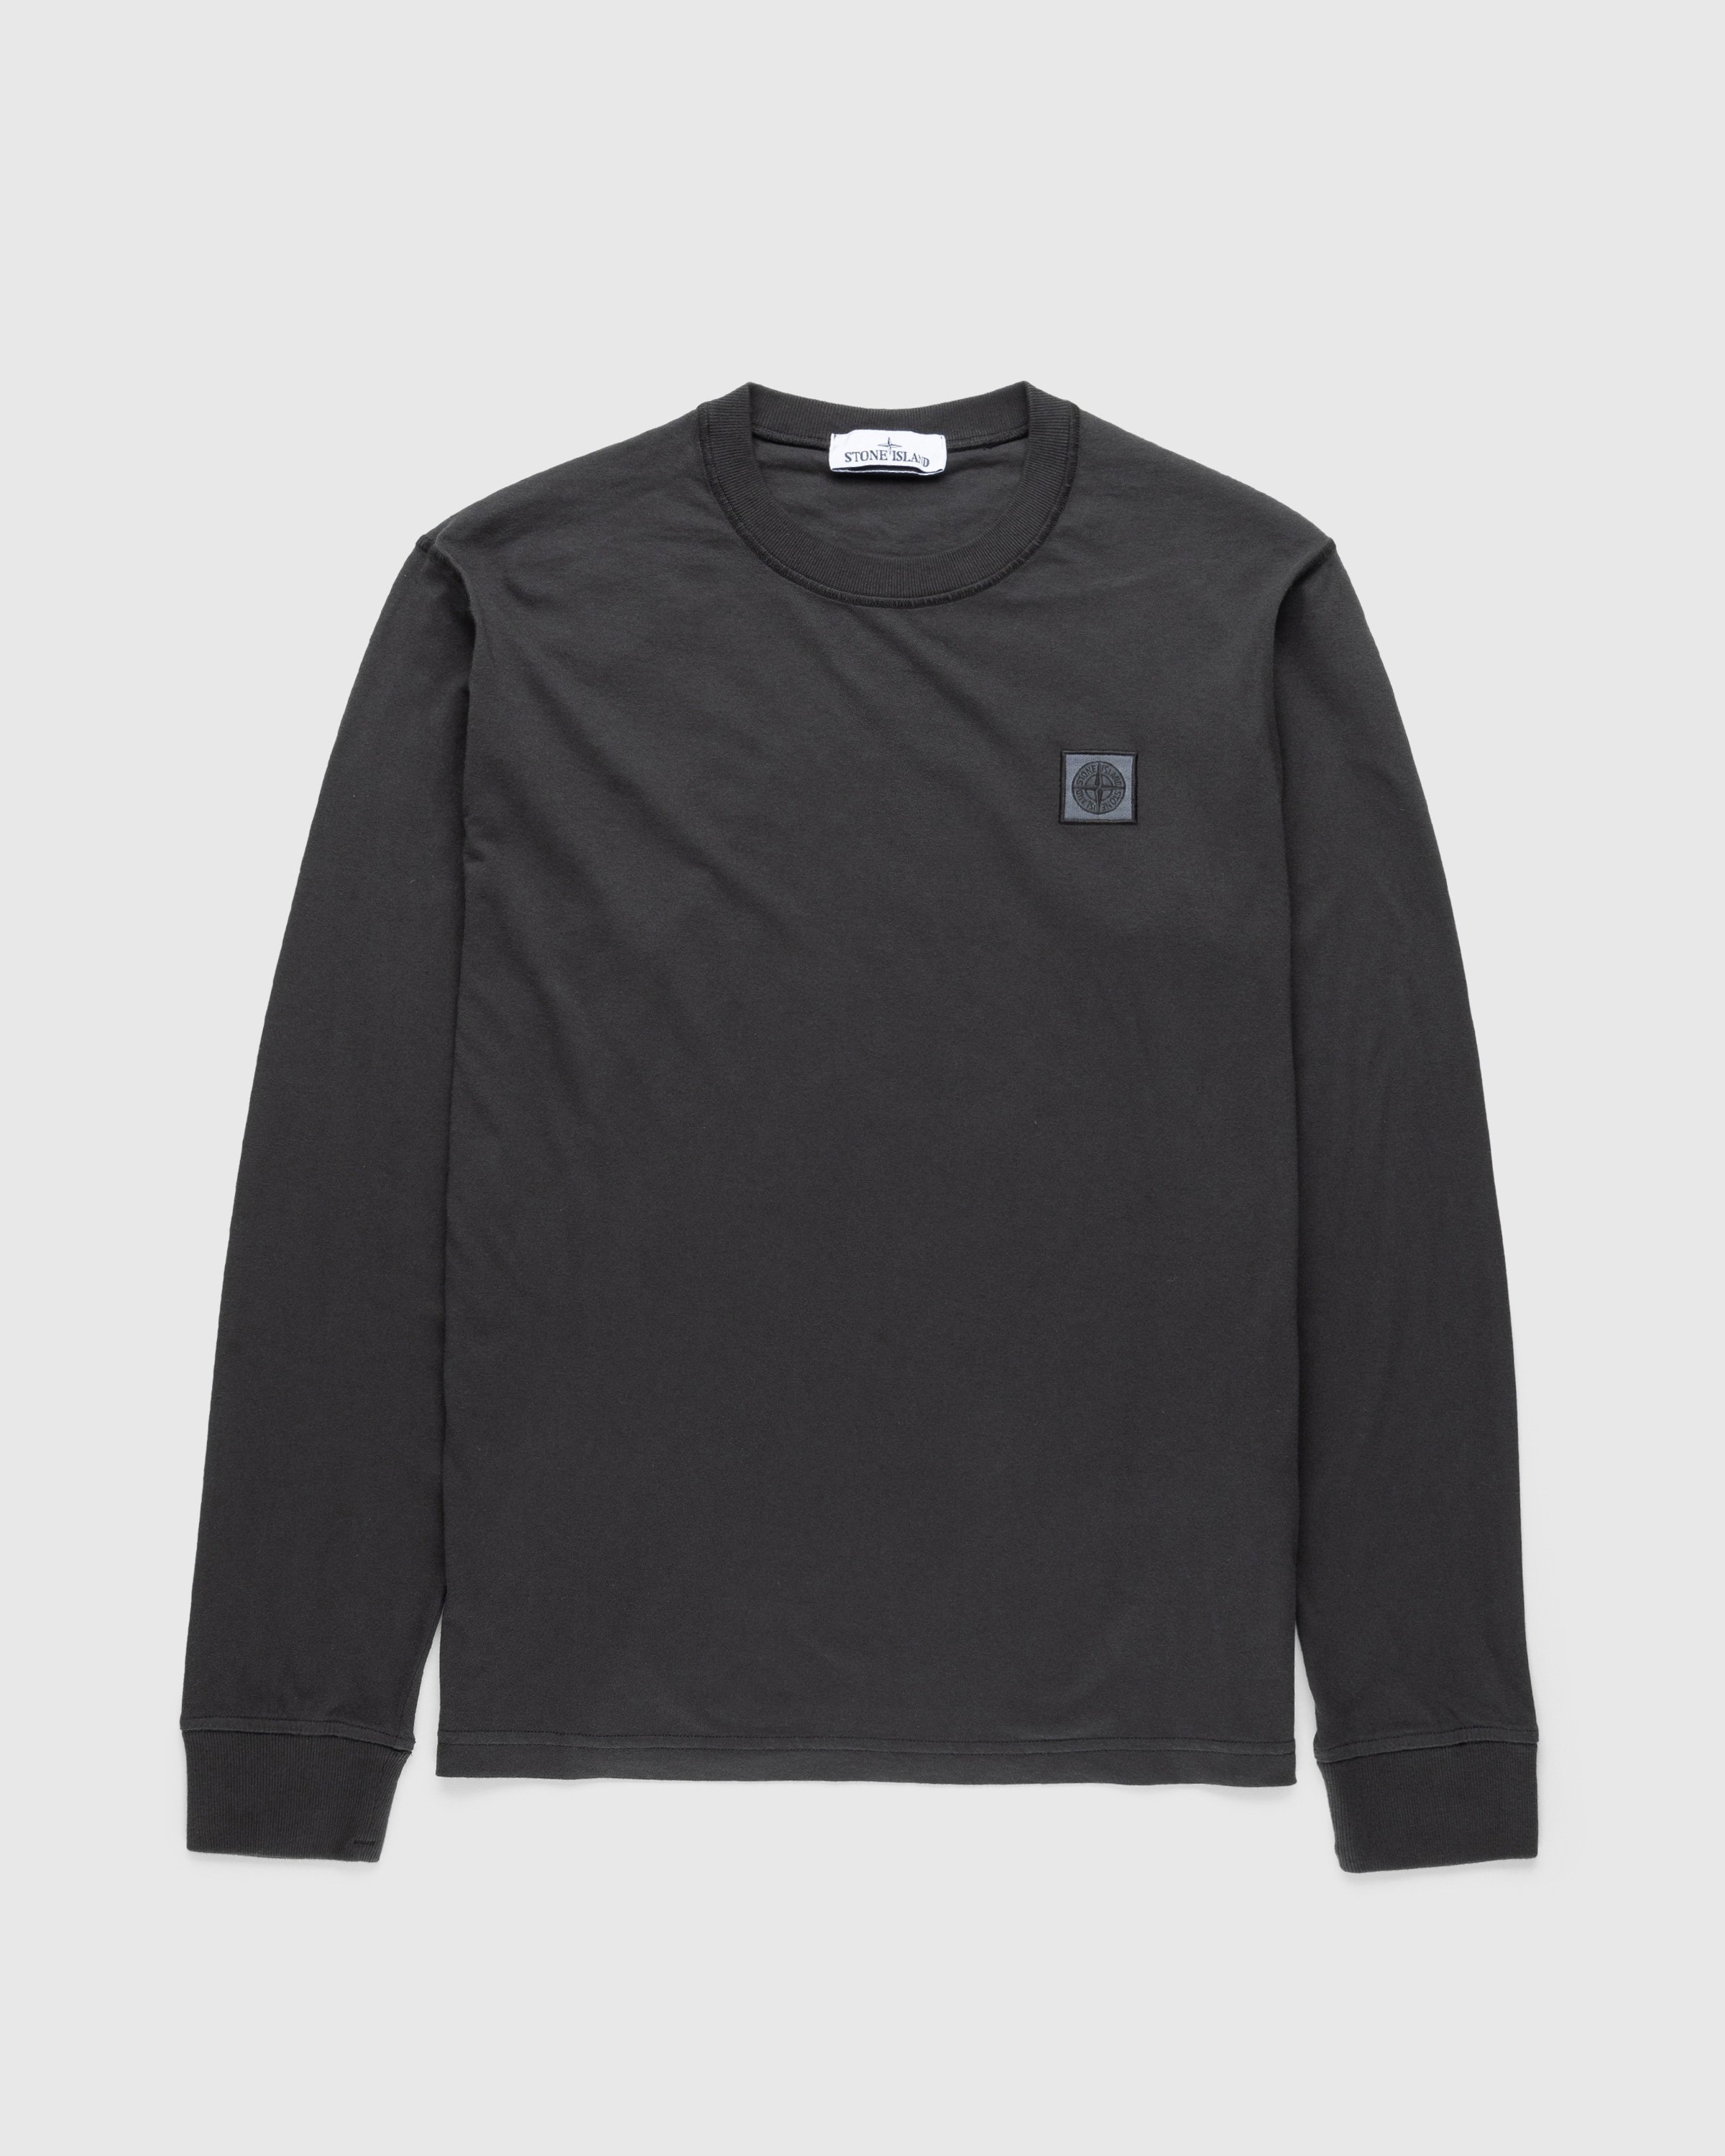 Stone Island - Fissato Longsleeve T-Shirt Charcoal - Clothing - Grey - Image 1